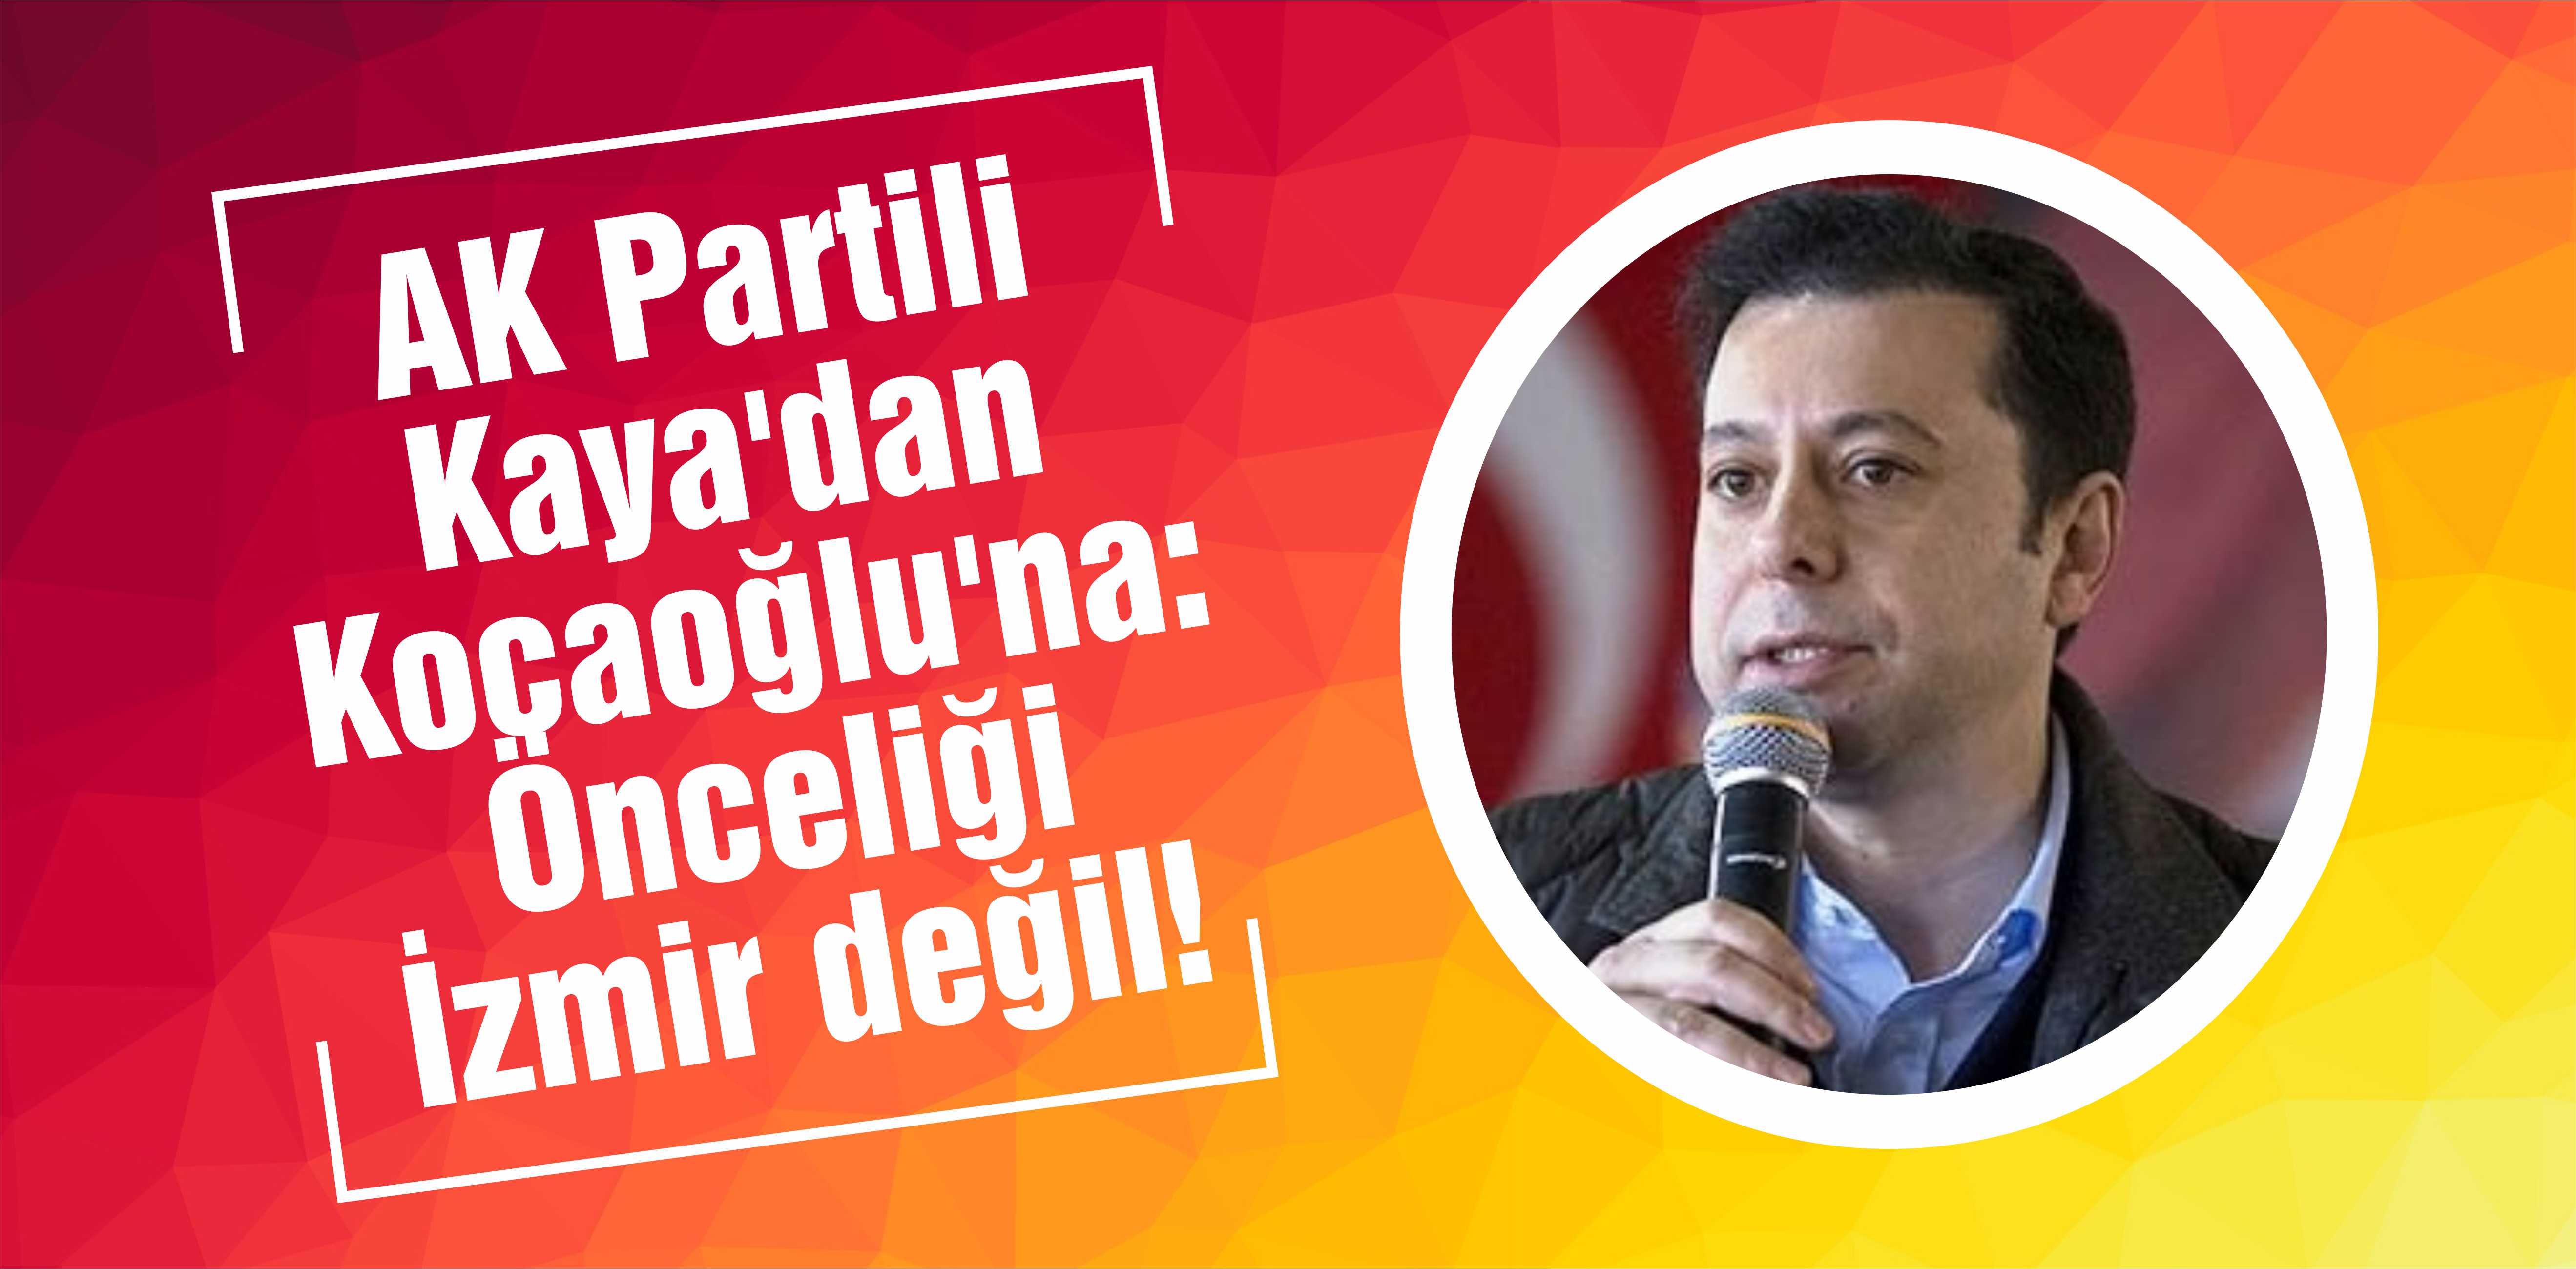 AK Partili Kaya’dan Kocaoğlu’na: Önceliği İzmir değil!